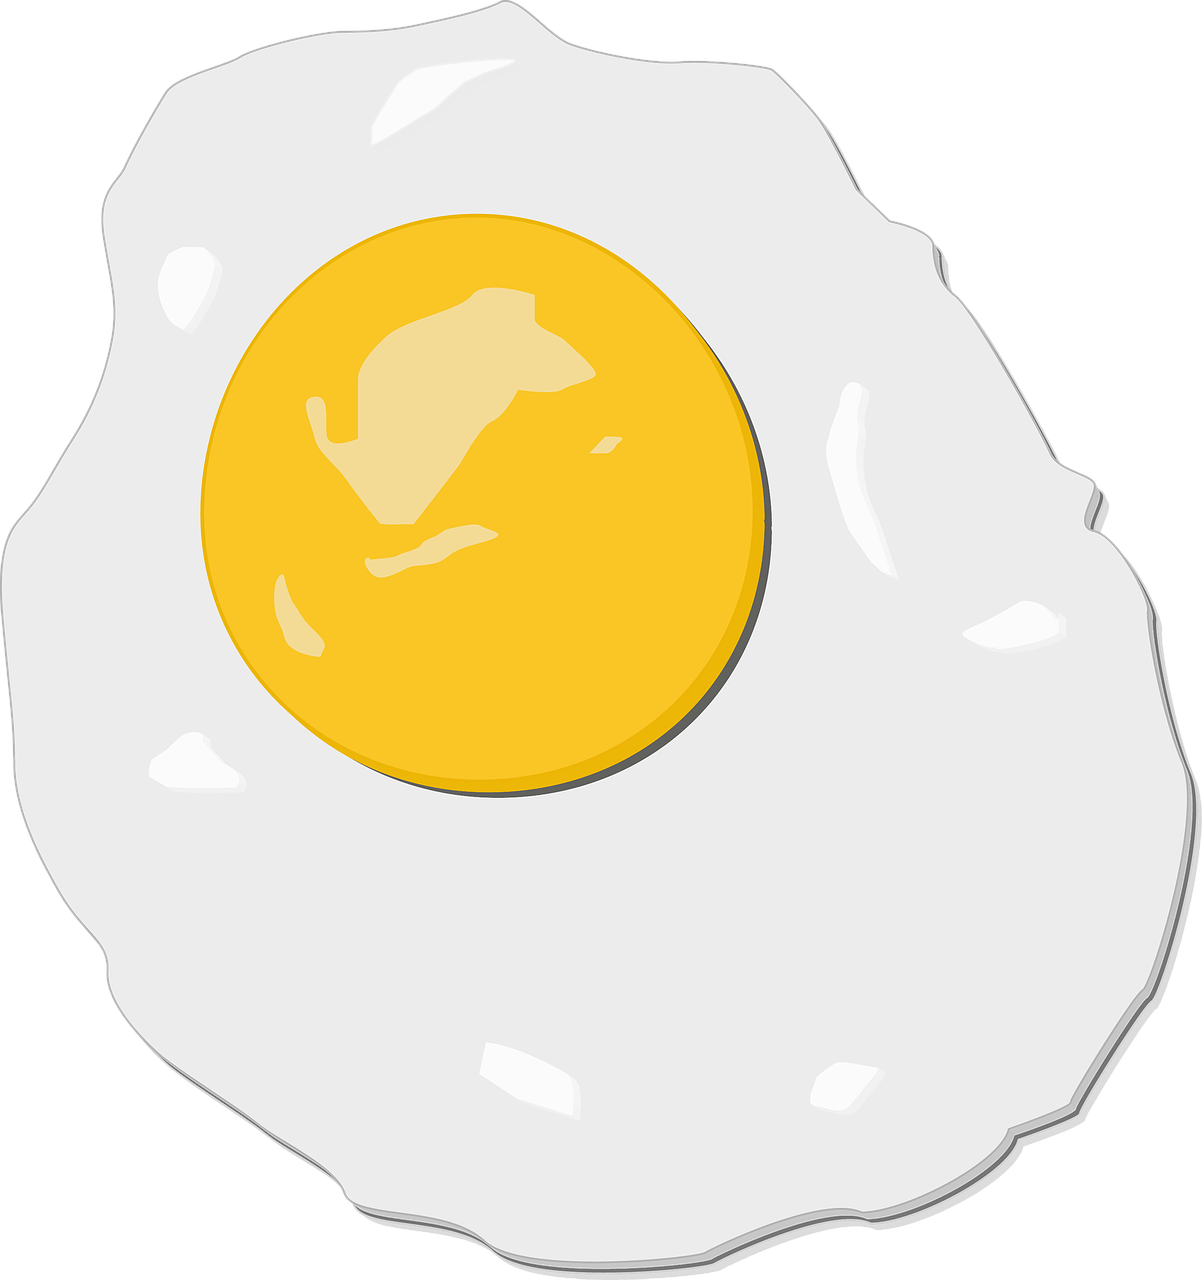 egg fried illustration free photo